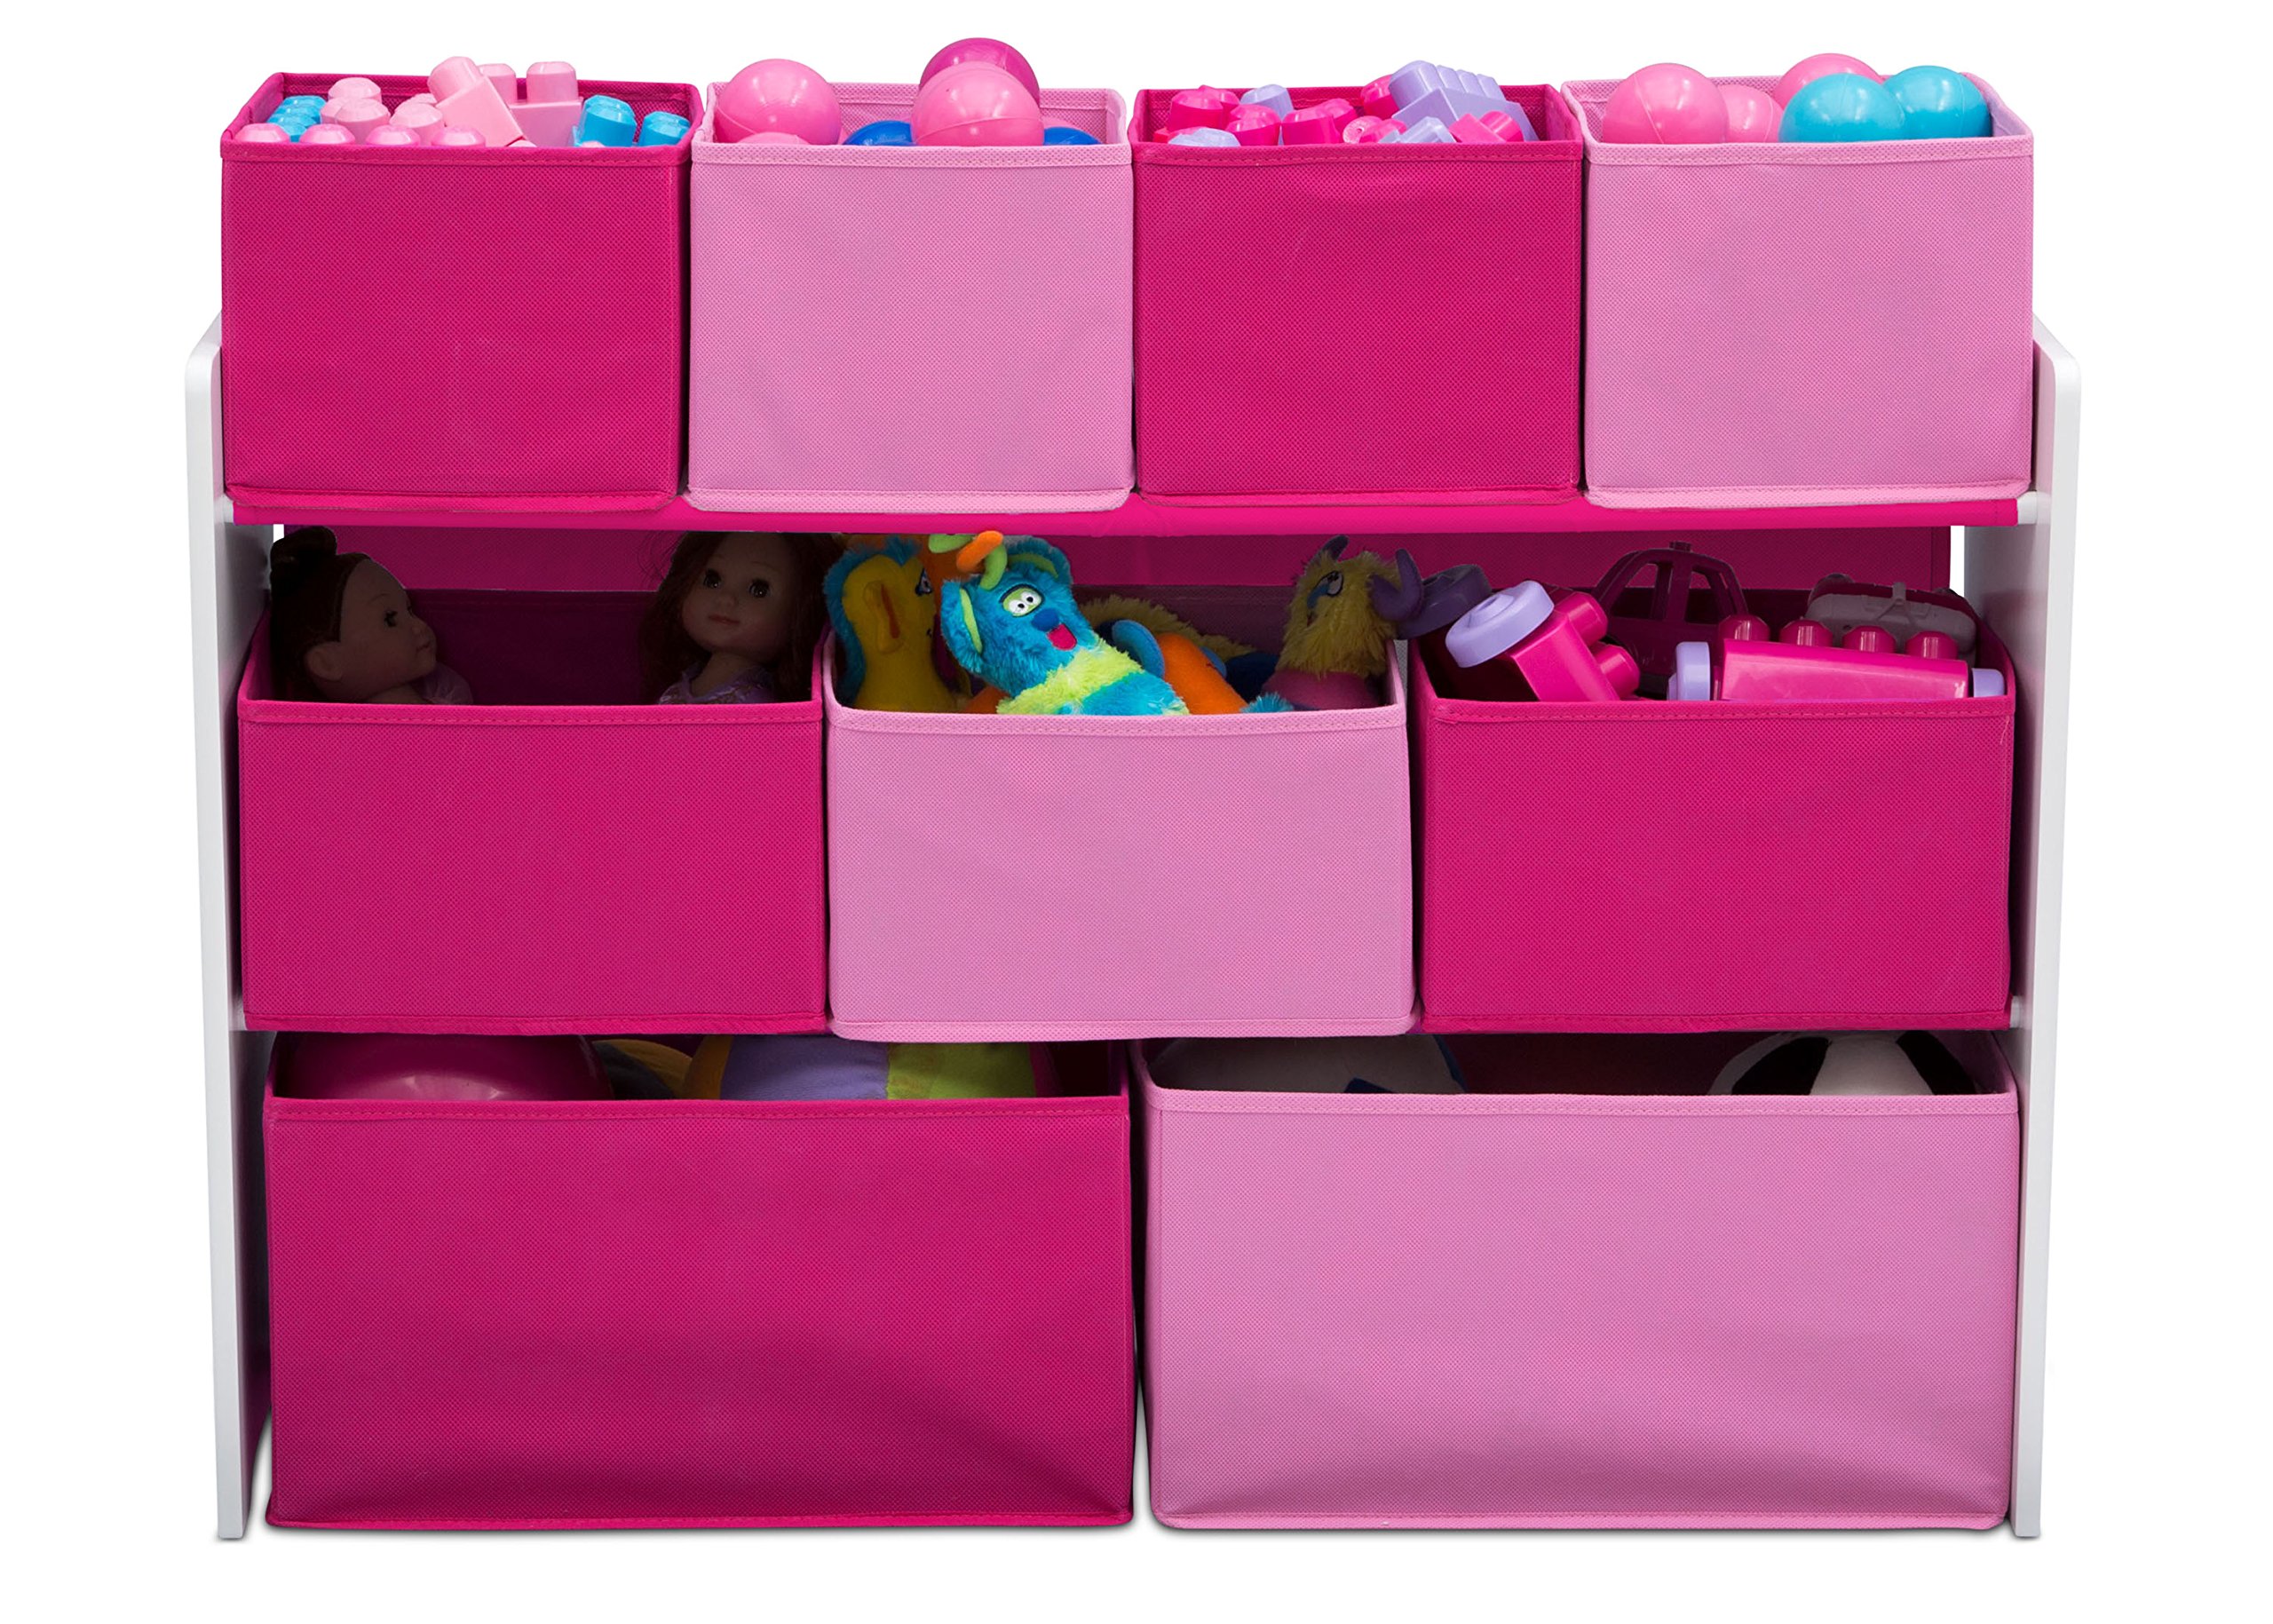 Delta Children Deluxe Multi-Bin Toy Organizer with Storage Bins - Greenguard Gold Certified, White/Pink Bins